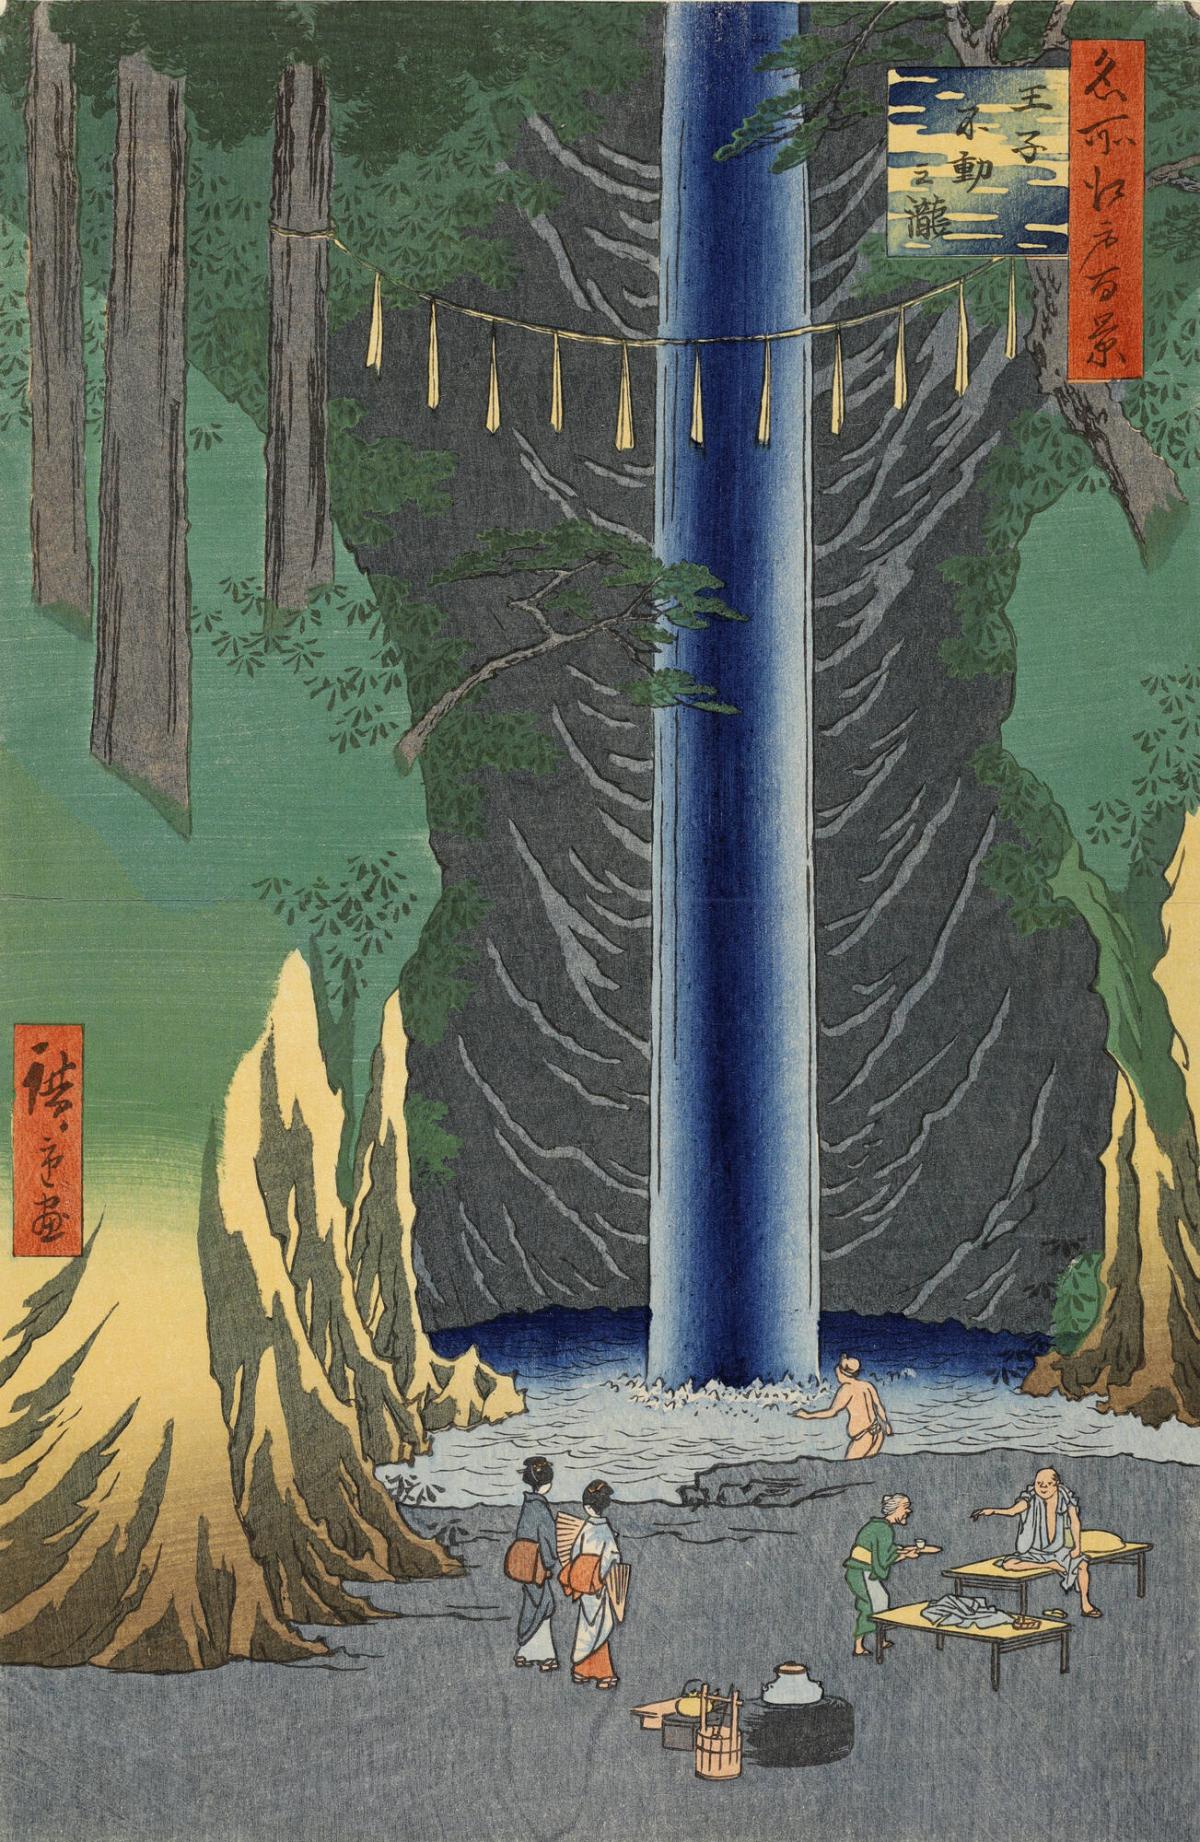 Fudō Fall, Ōji (Ōji Fudō no taki), from the series One Hundred Famous Views of Edo (Meisho Edo hyakkei)